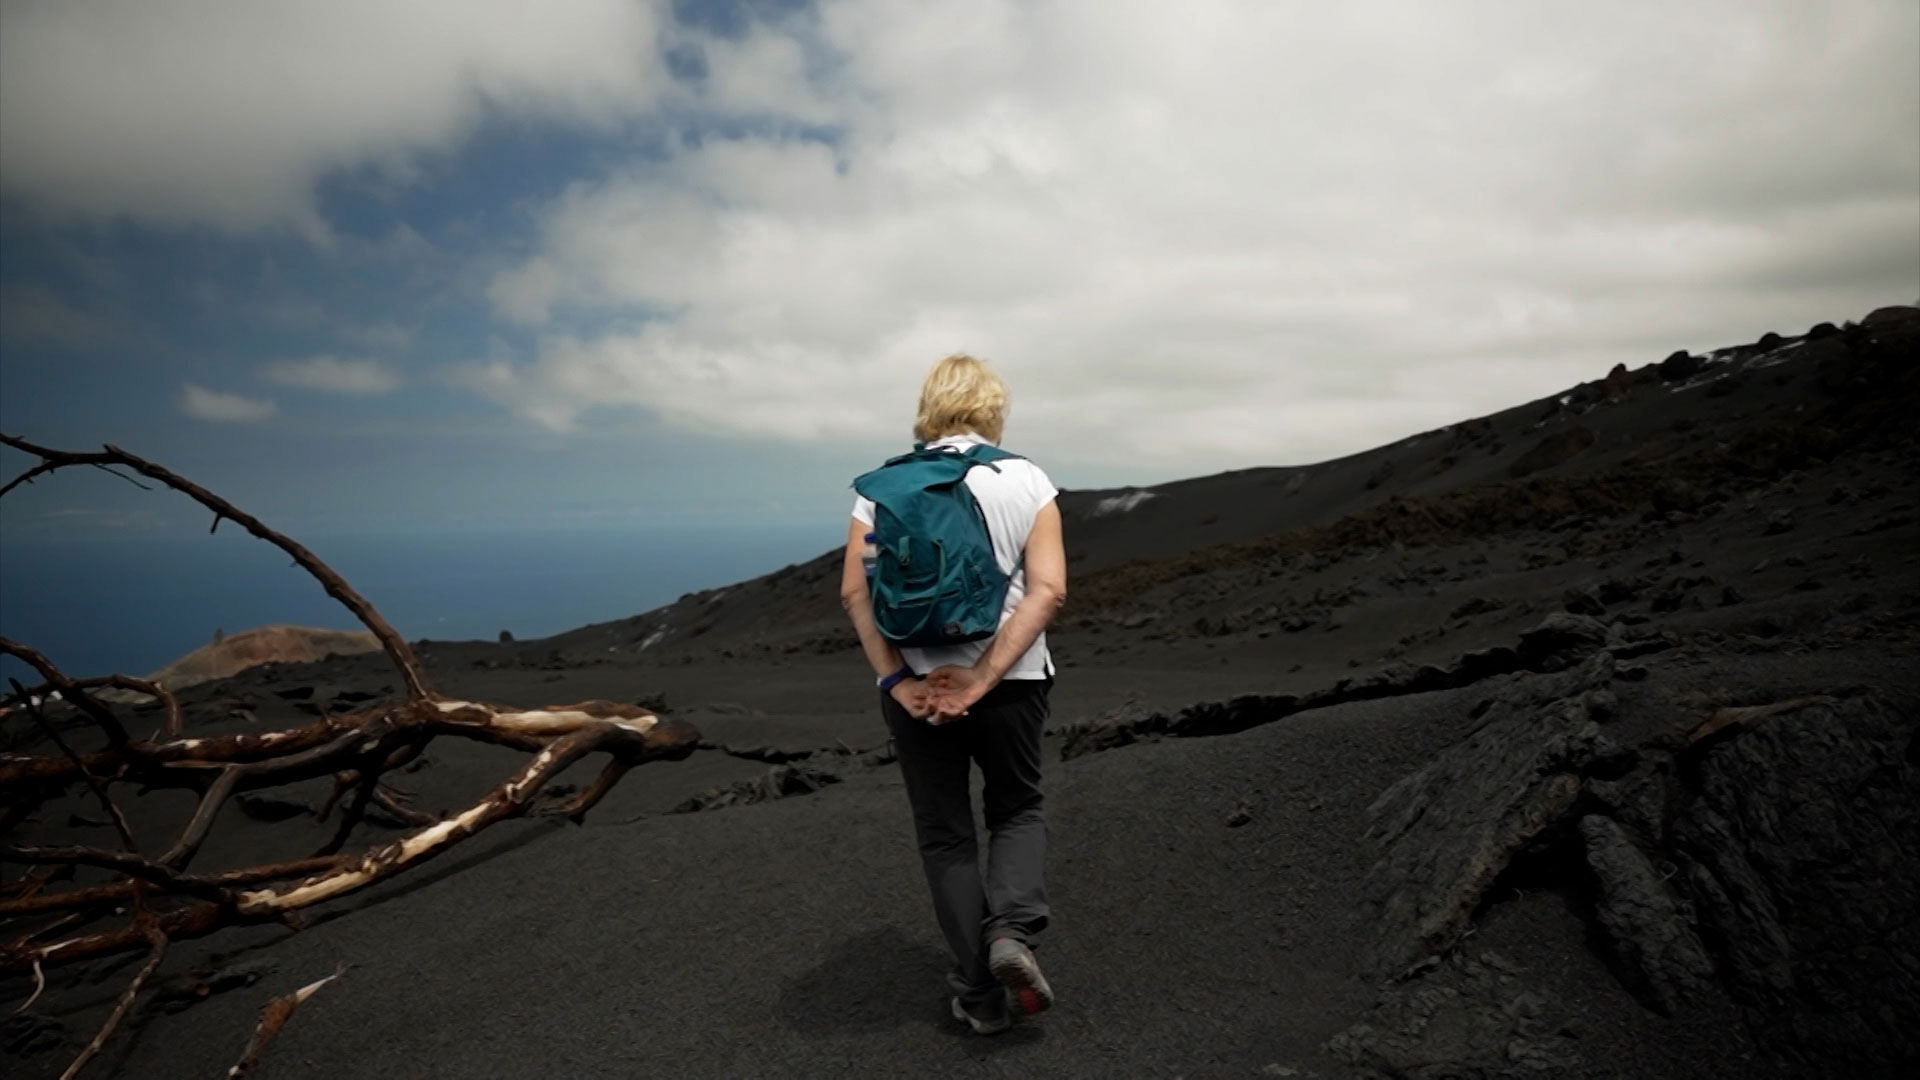 Especial ‘La Palma, dos años después’ en el aniversario de la erupción del volcán de Tajogaite